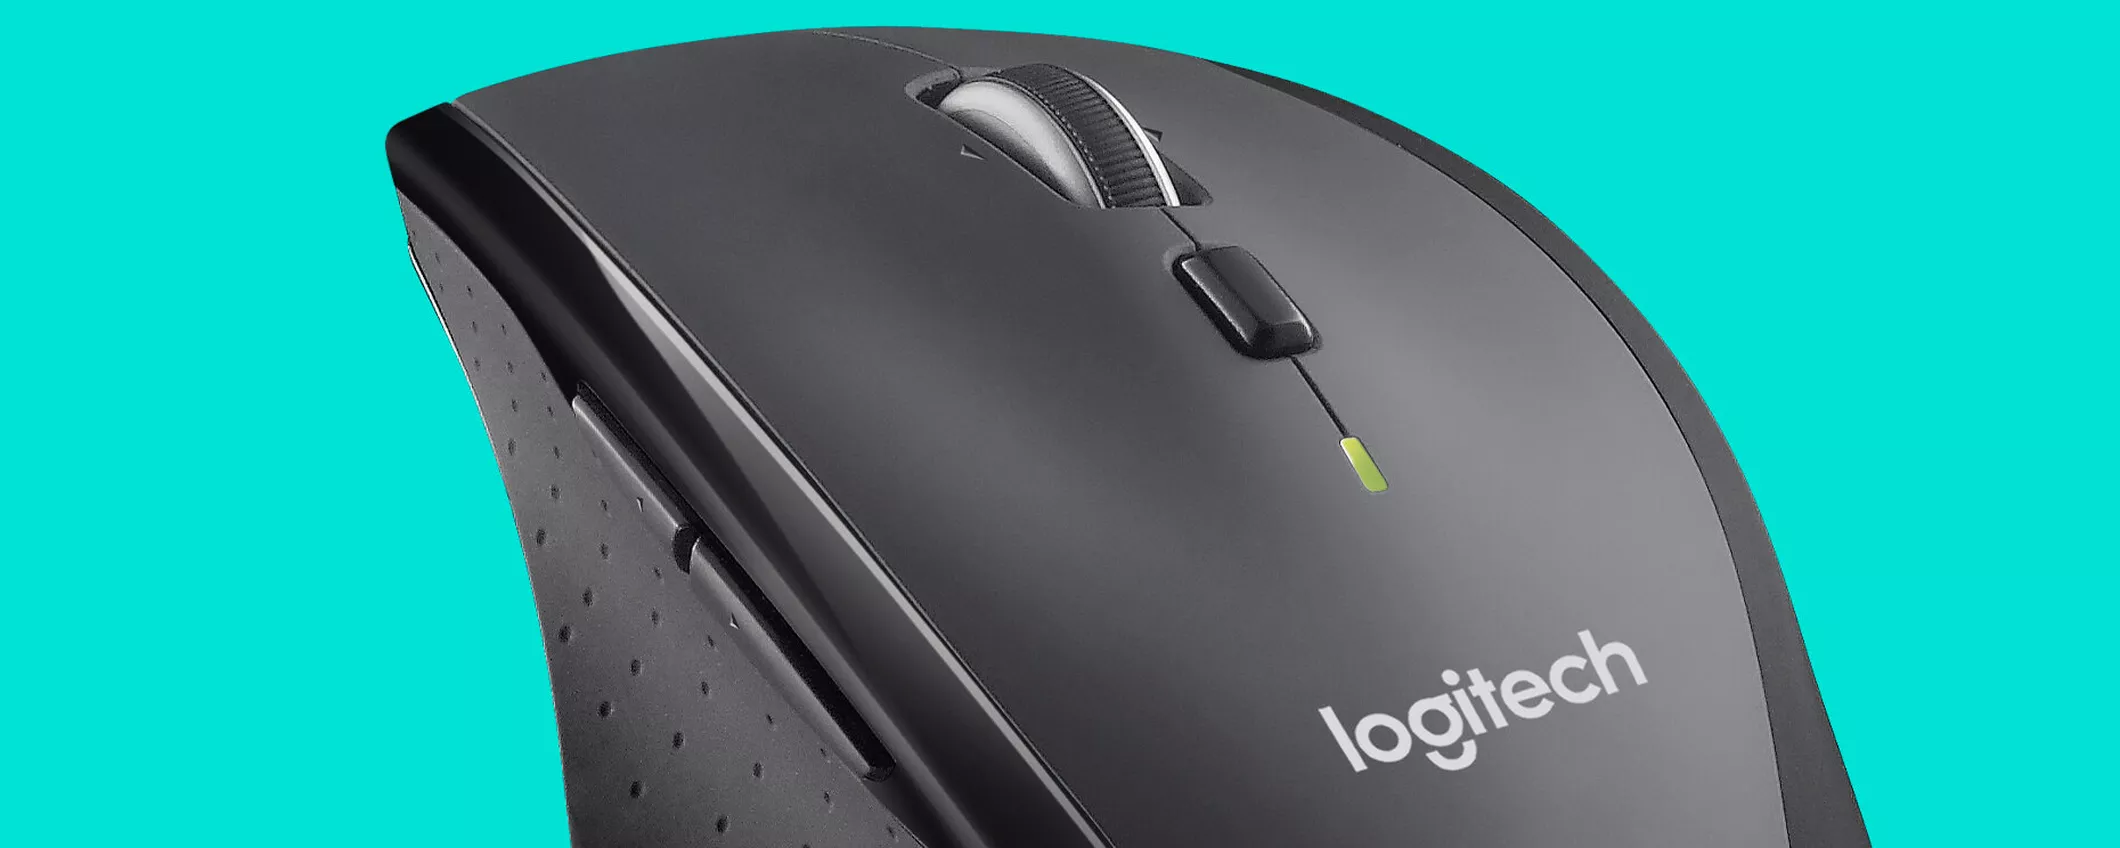 Logitech M705 Marathon: ottimo mouse a un super prezzo